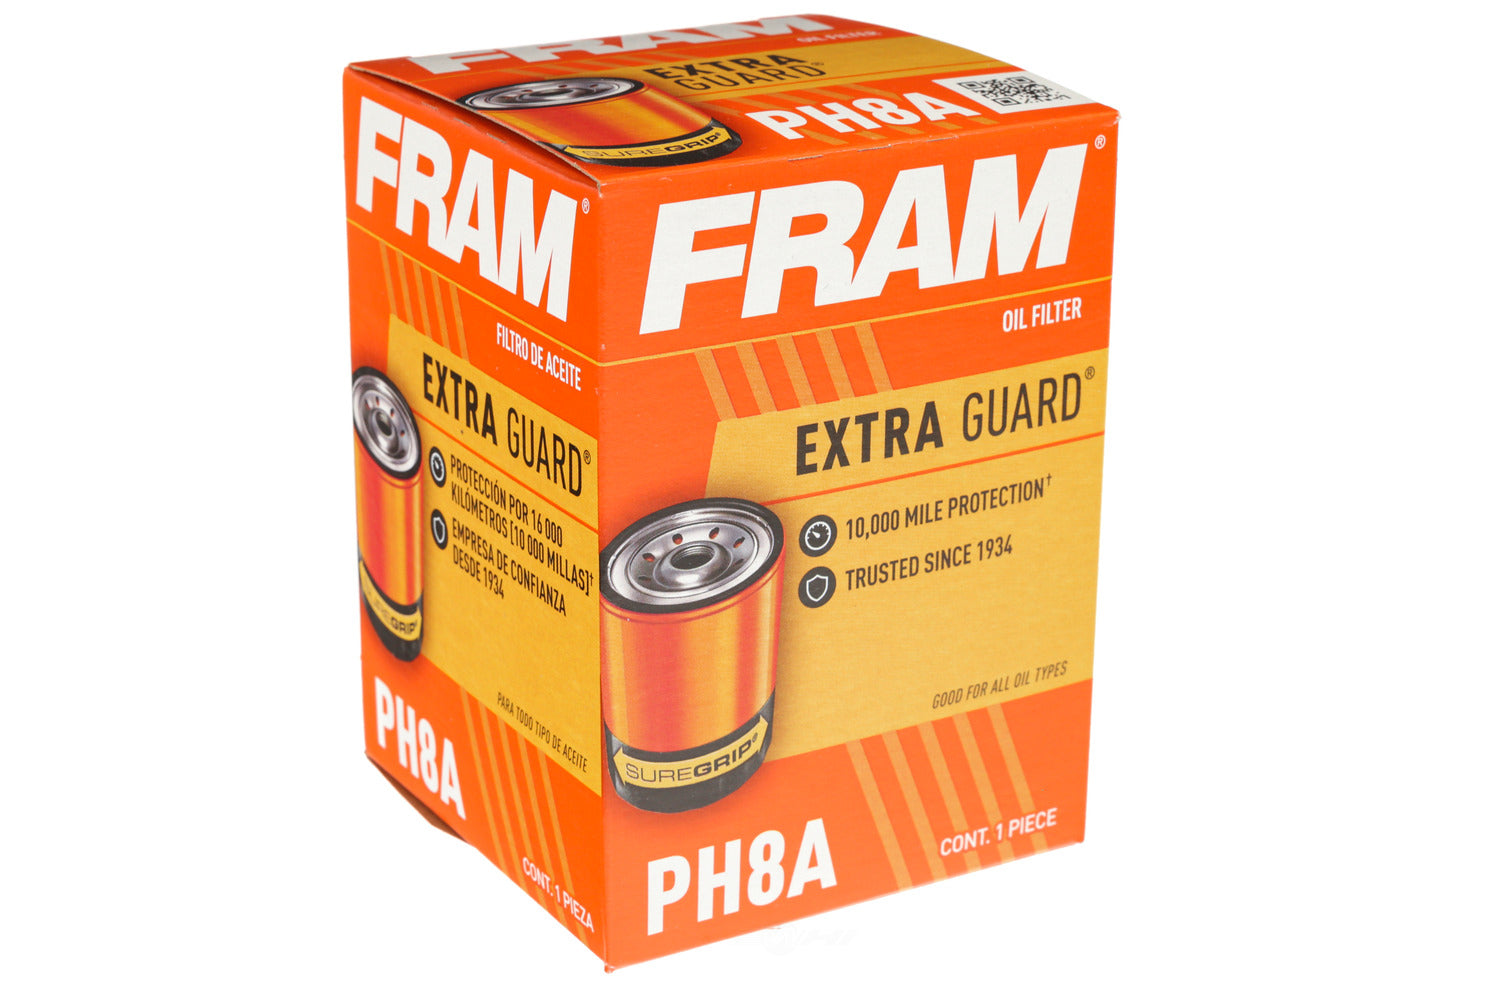 PH8A FRAM Extra Guard Oil Filter